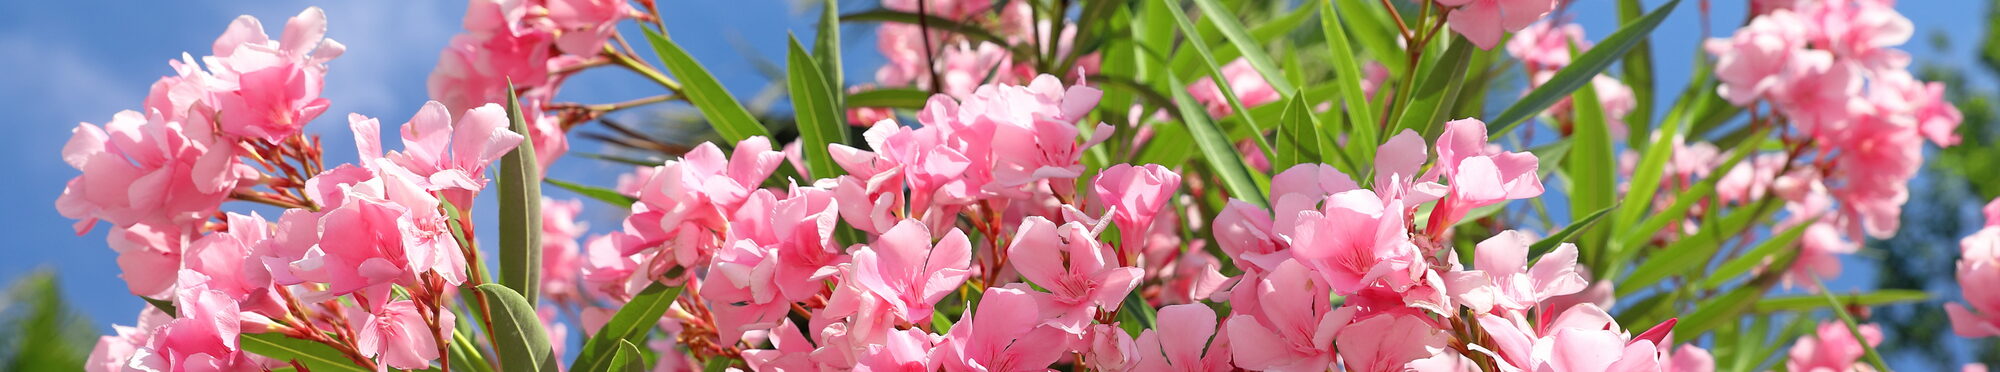 Nerium oleander. Pink oleander flowers on blue sky background